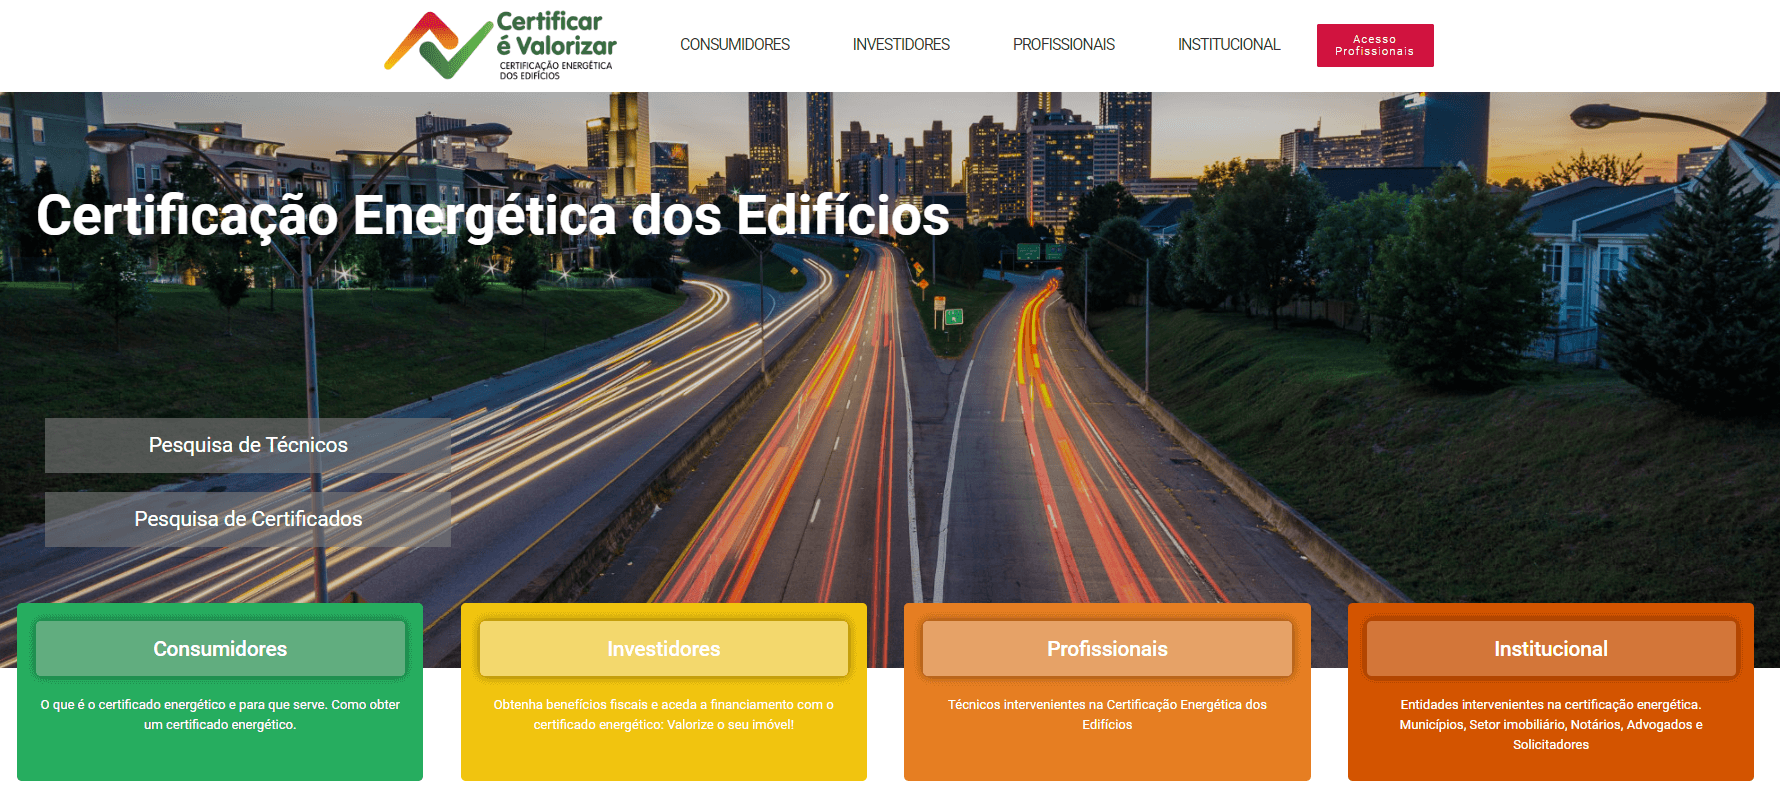 сертификат энергоэффективности в Португалии